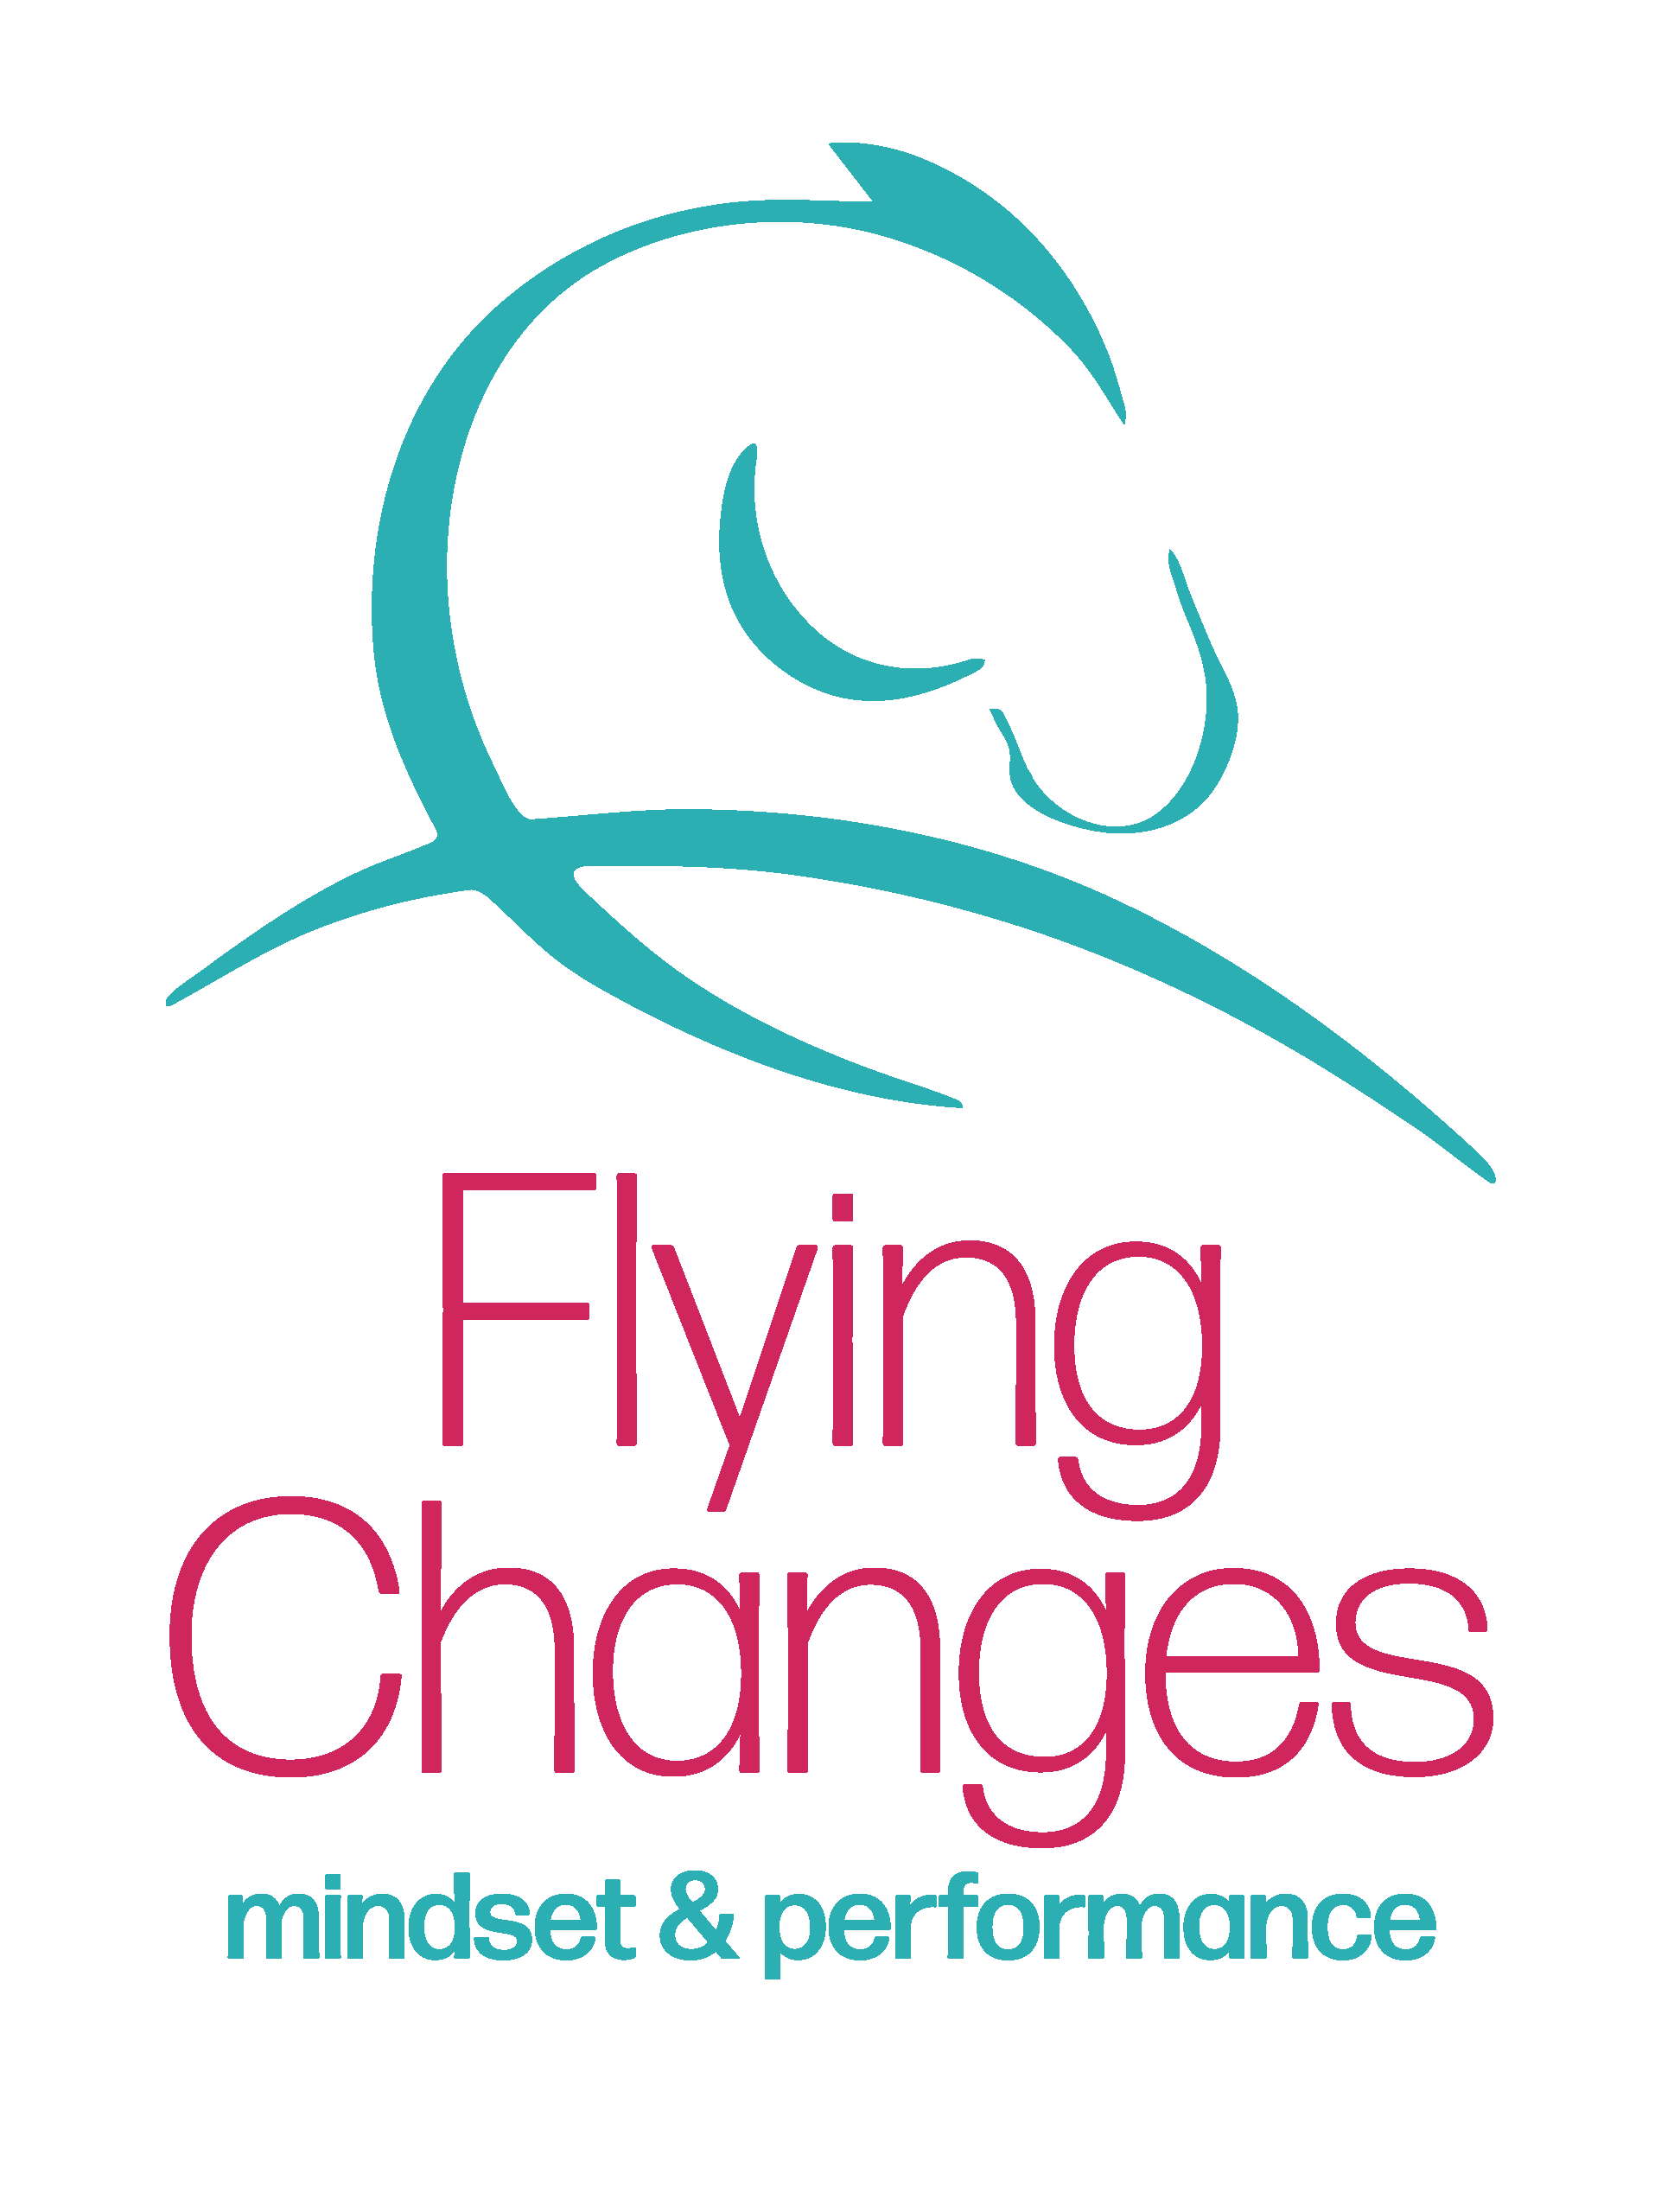 Flying-Changes-Logo---mindset-&-performance.png